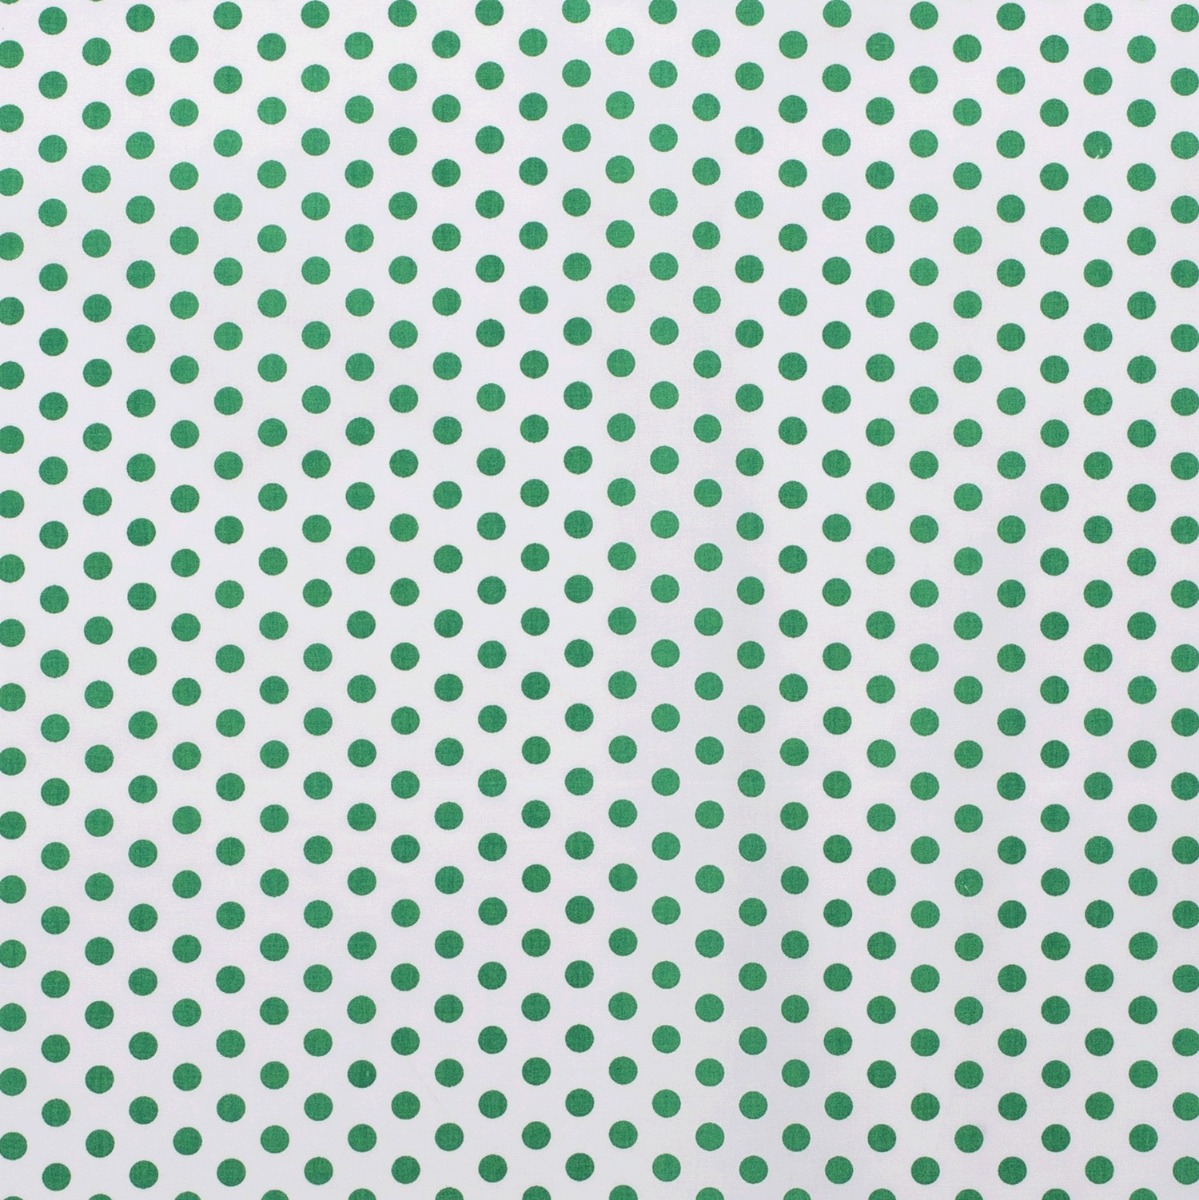 Baumwolle Punkte Standard Weiß/Grün